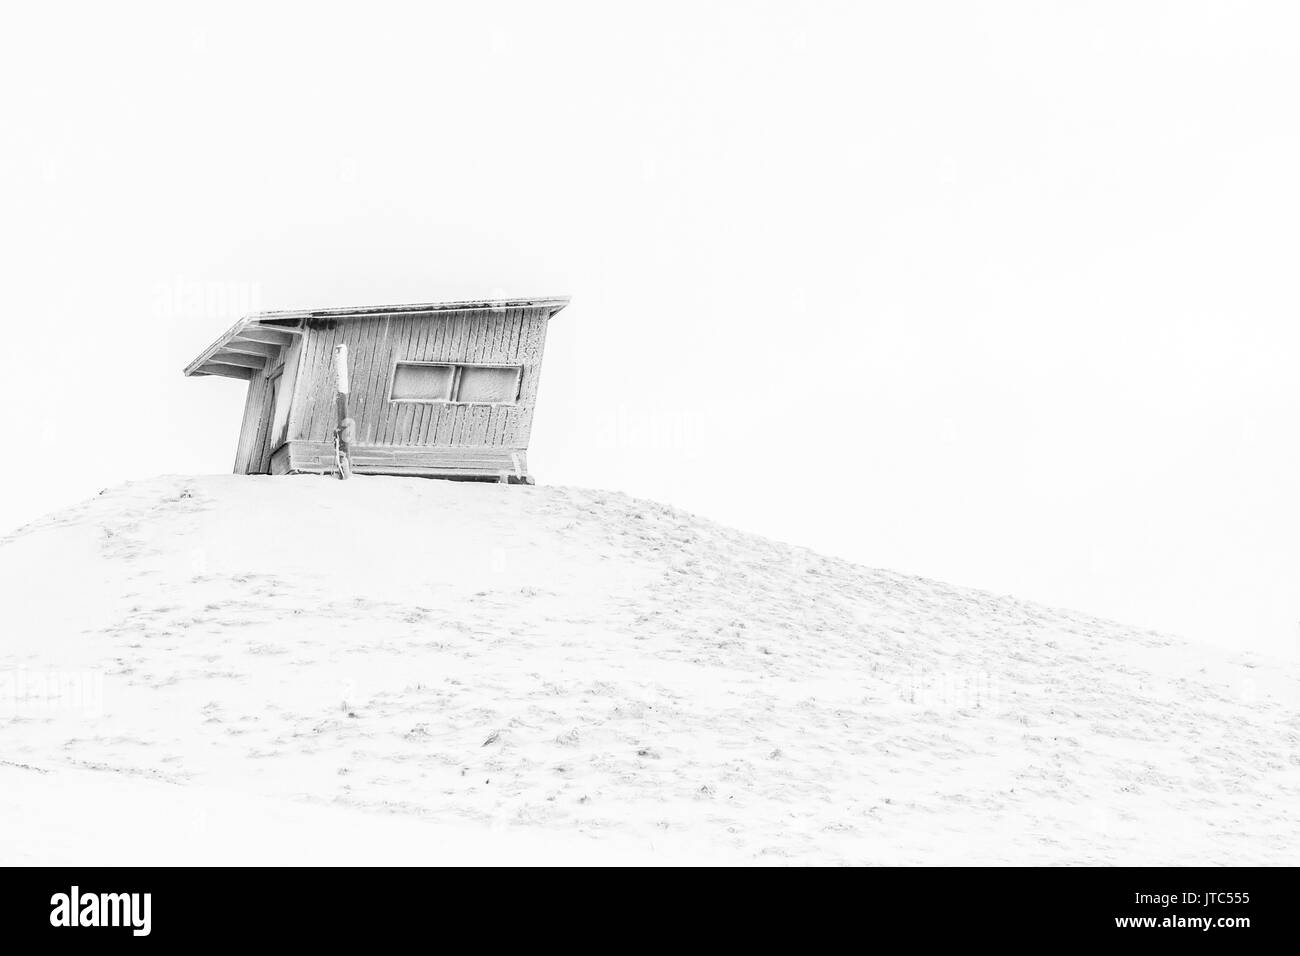 Piccola casa sulla collina. Finlandia, Ruka. Immagine in bianco e nero. Foto Stock